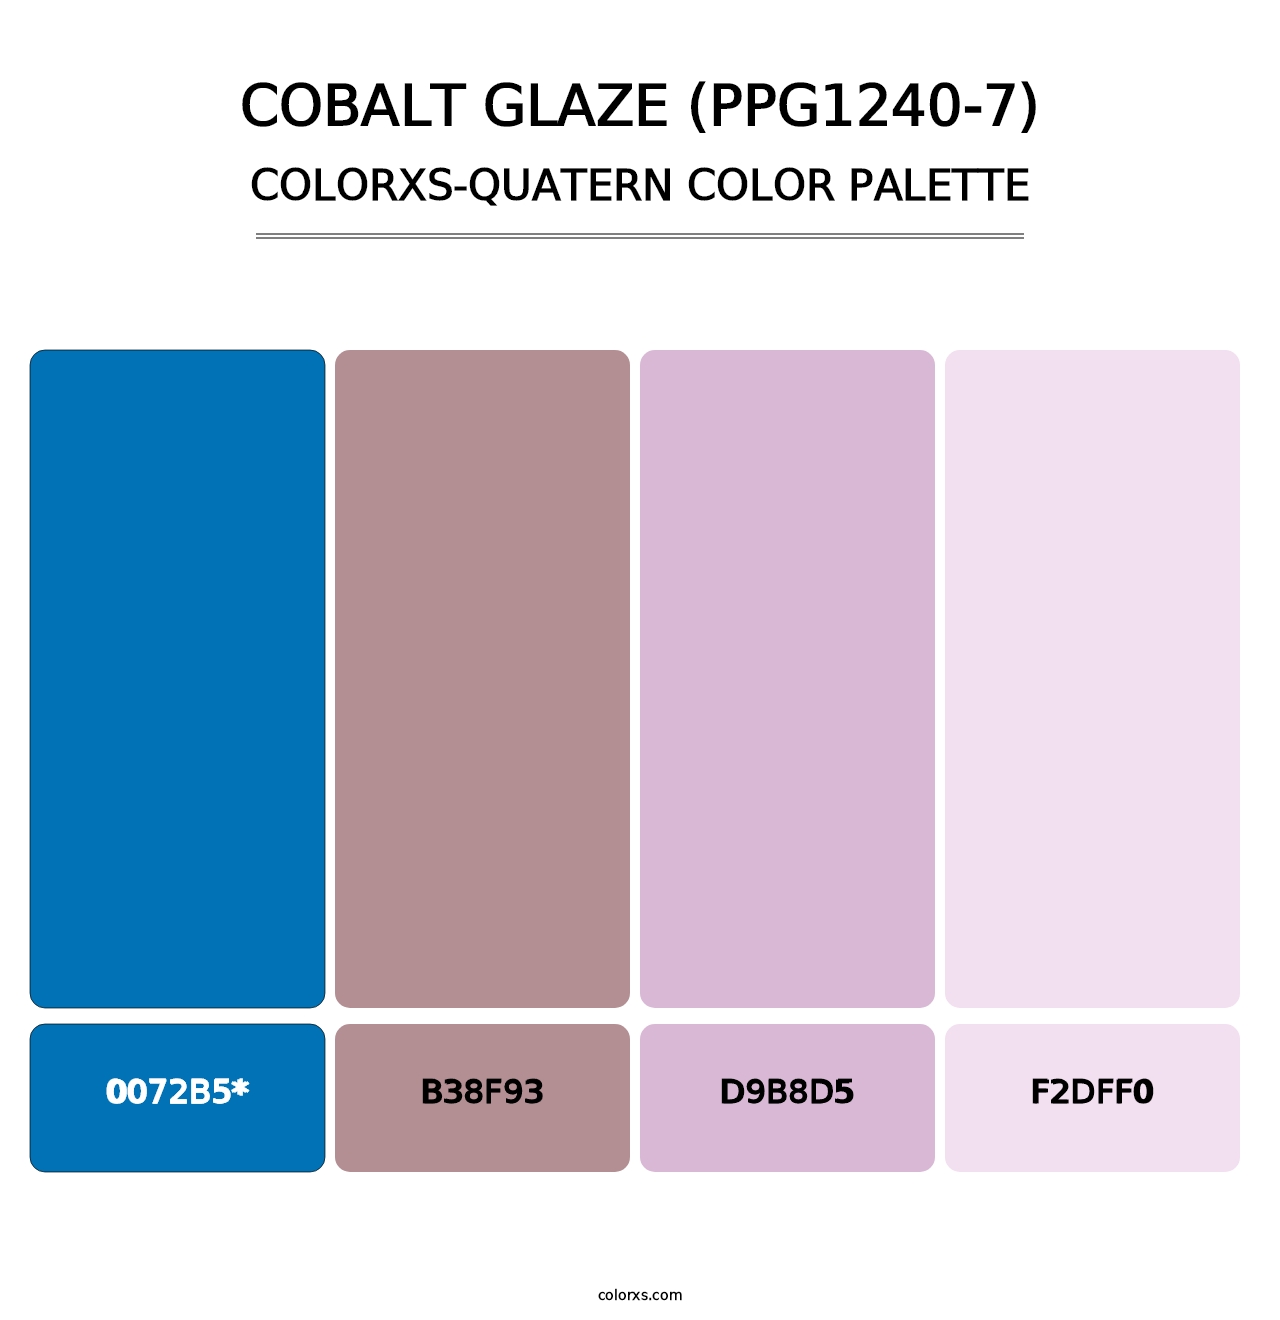 Cobalt Glaze (PPG1240-7) - Colorxs Quatern Palette